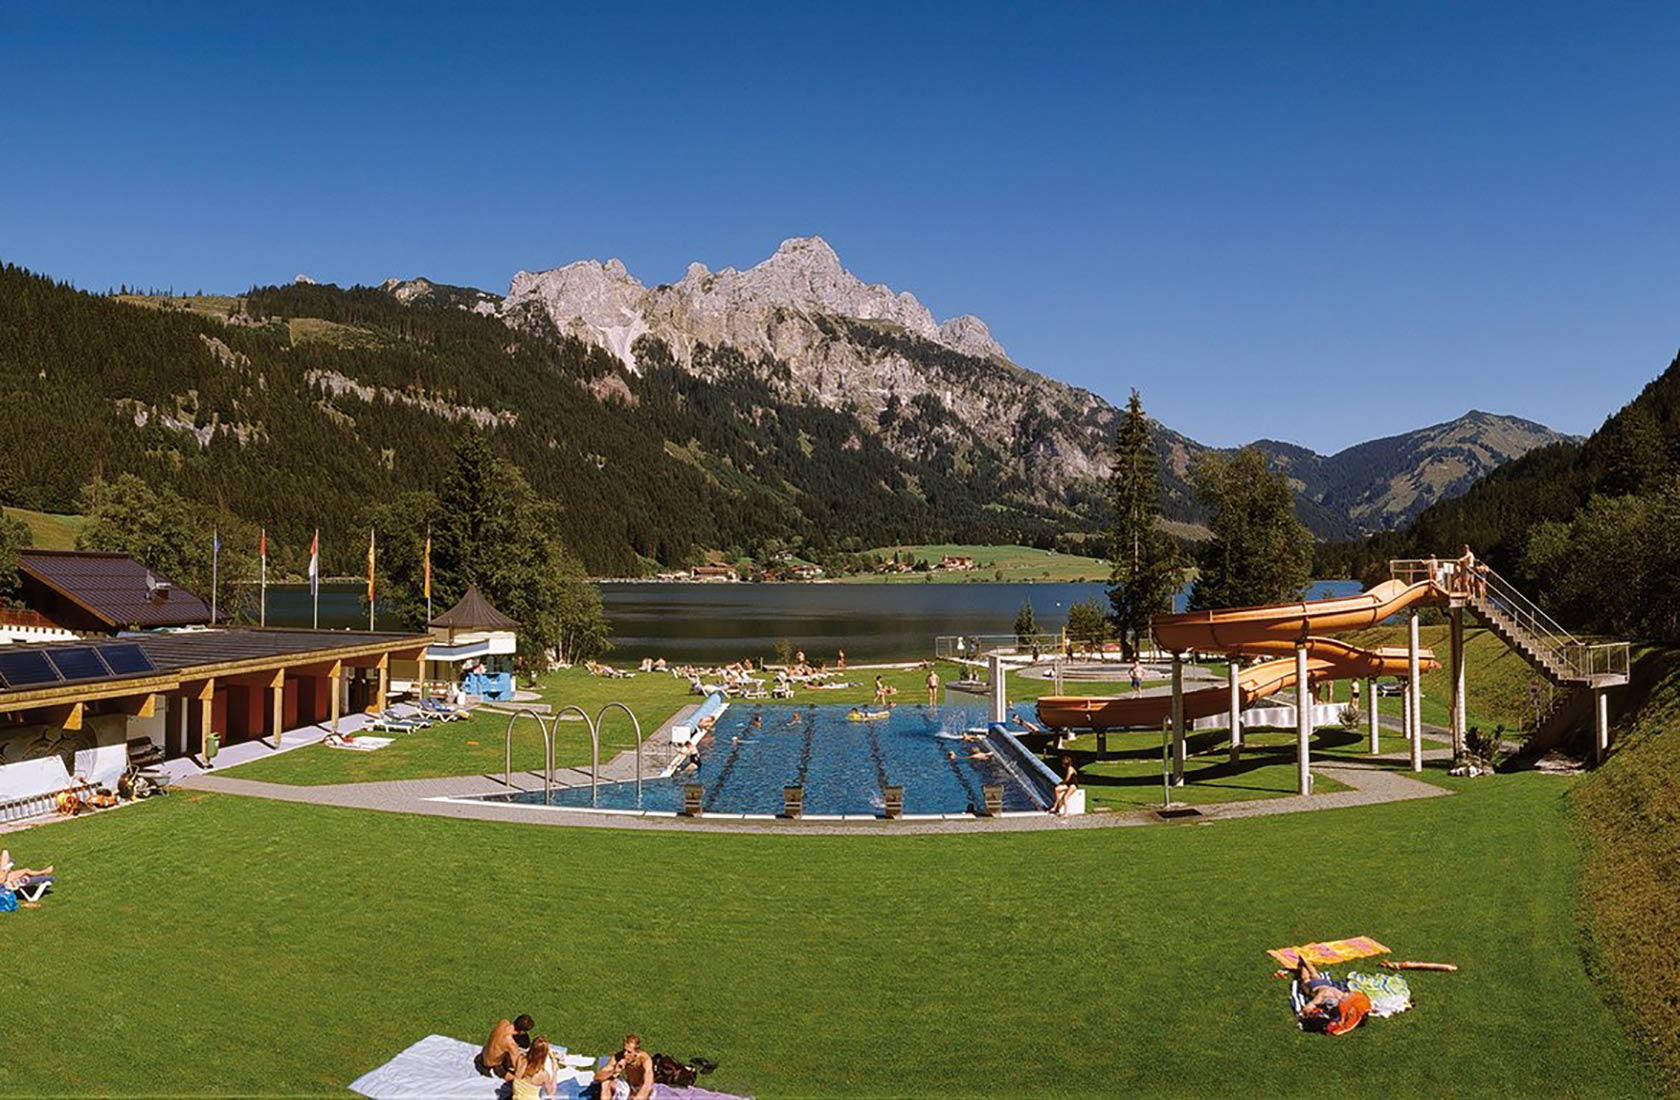 Urlaub am See mit Wassersport und Bootsverleih am Haldensee in Tirol